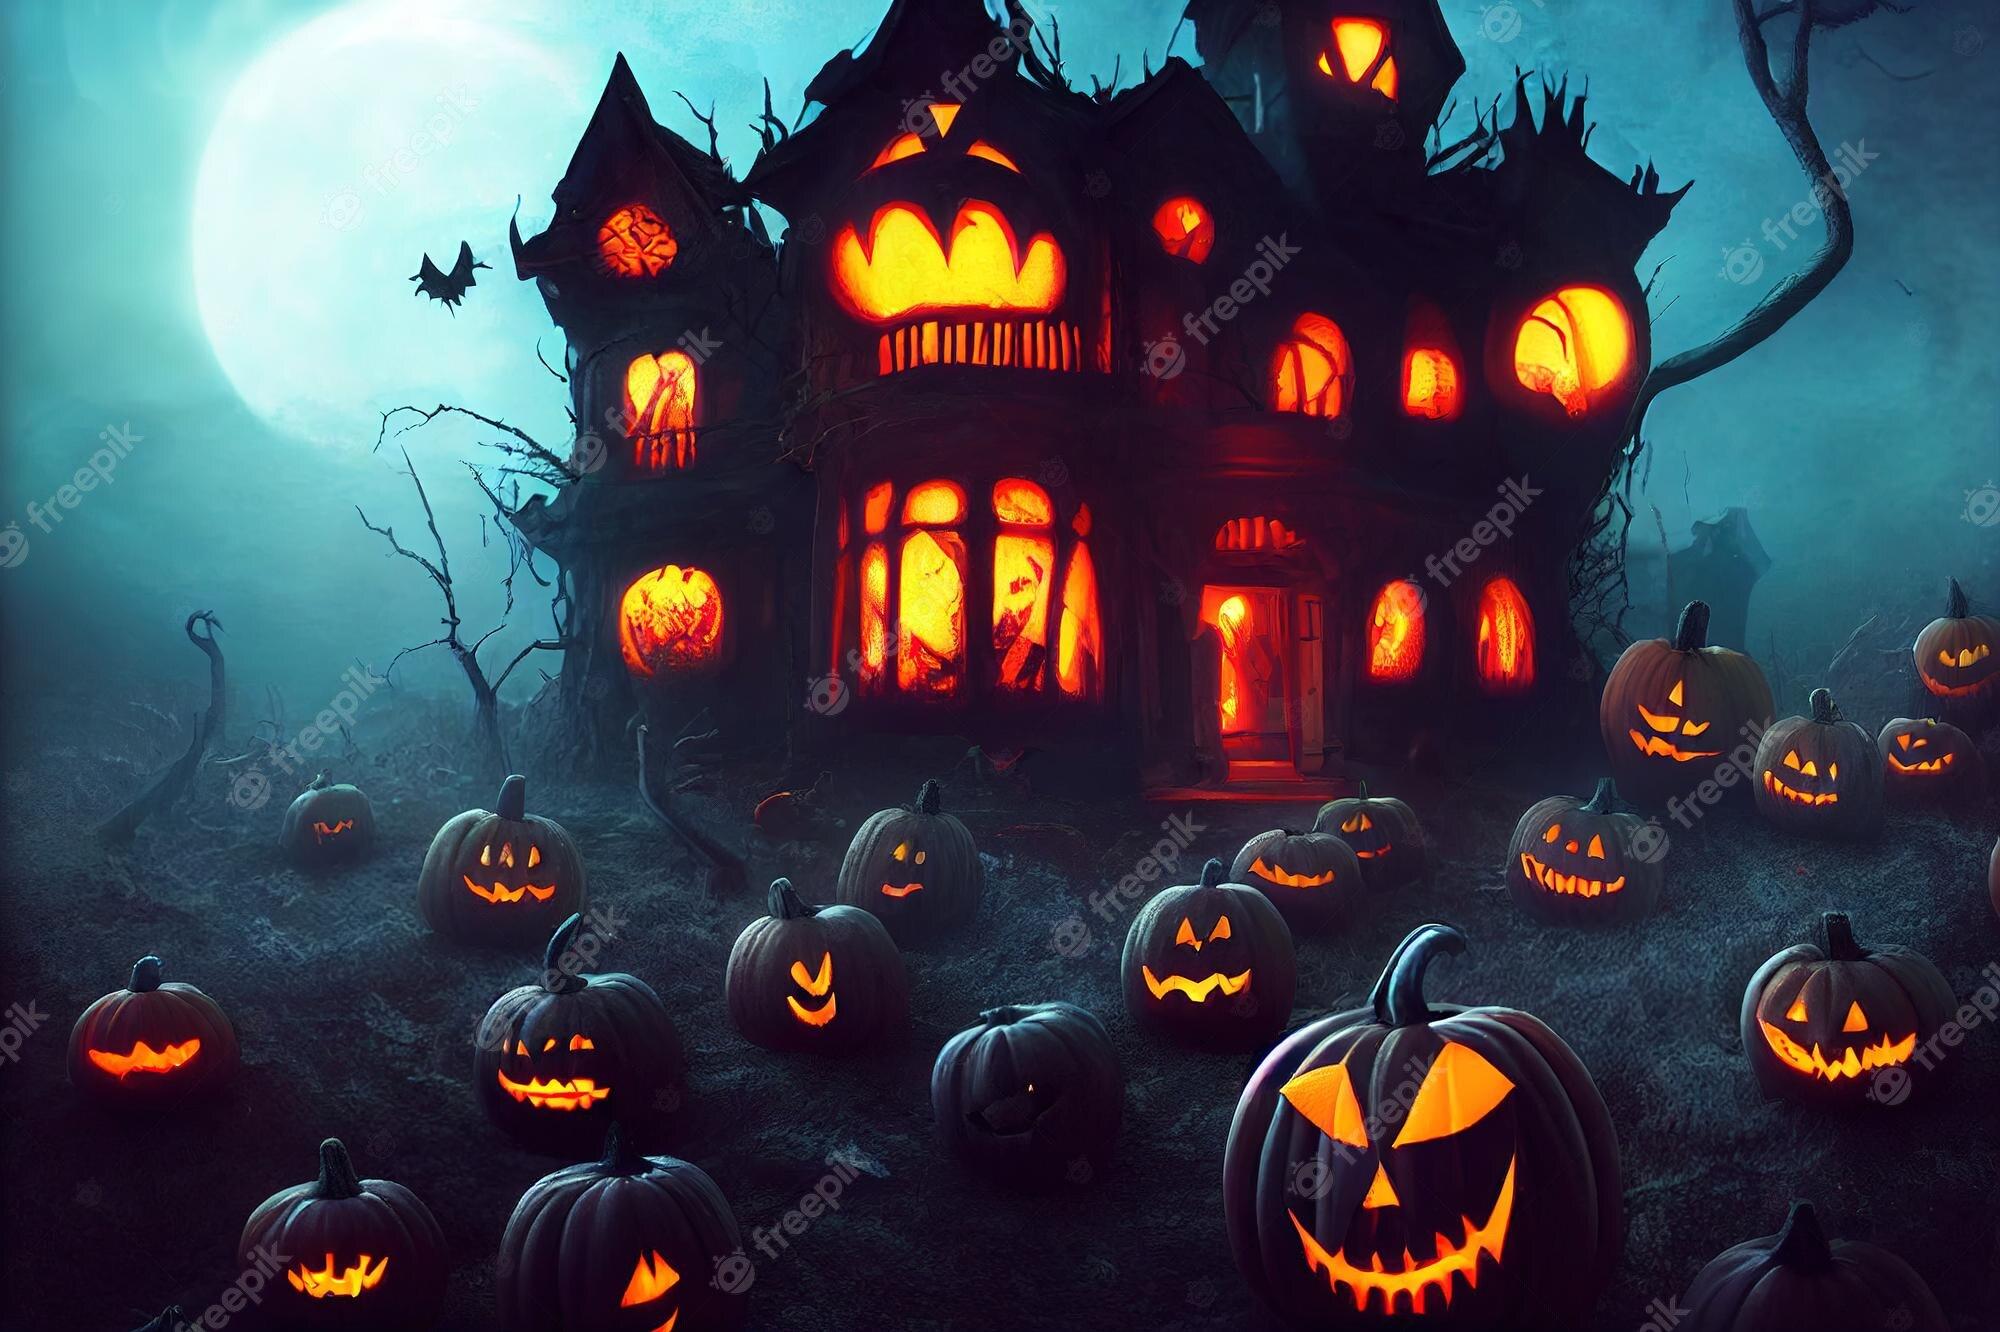 Free download Premium Photo Halloween pumpkin background [2000x1333 ...